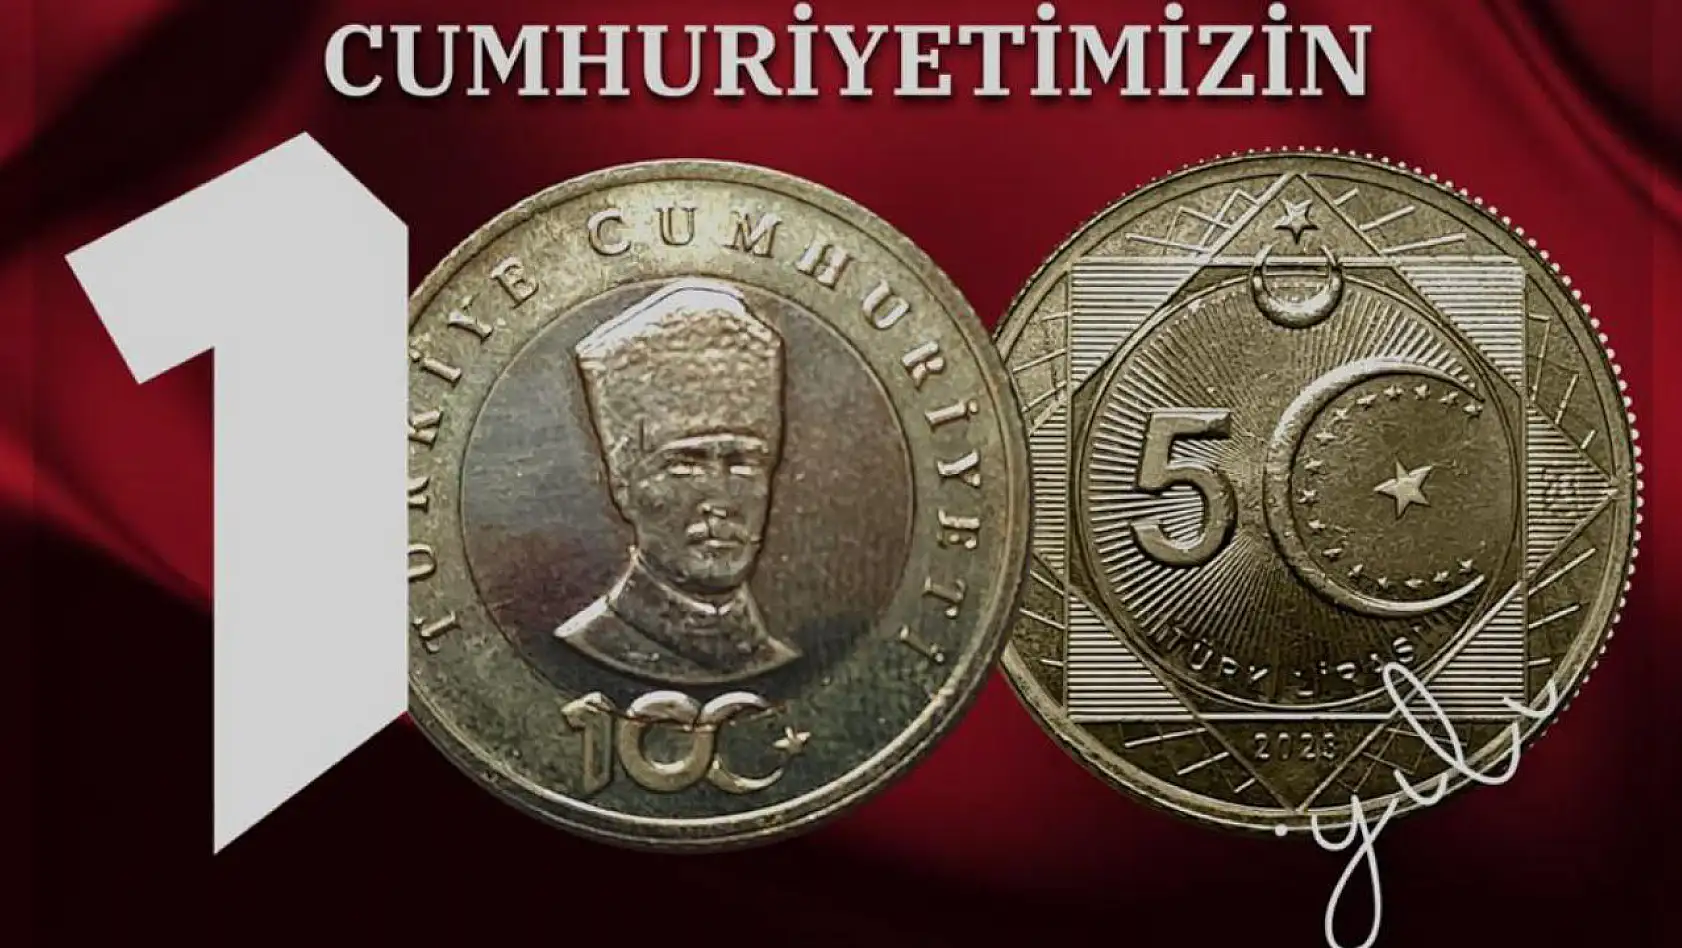 Cumhuriyetin 100. Yılına Özel '5 Türk Lirası' Hatıra Parası Basıldı